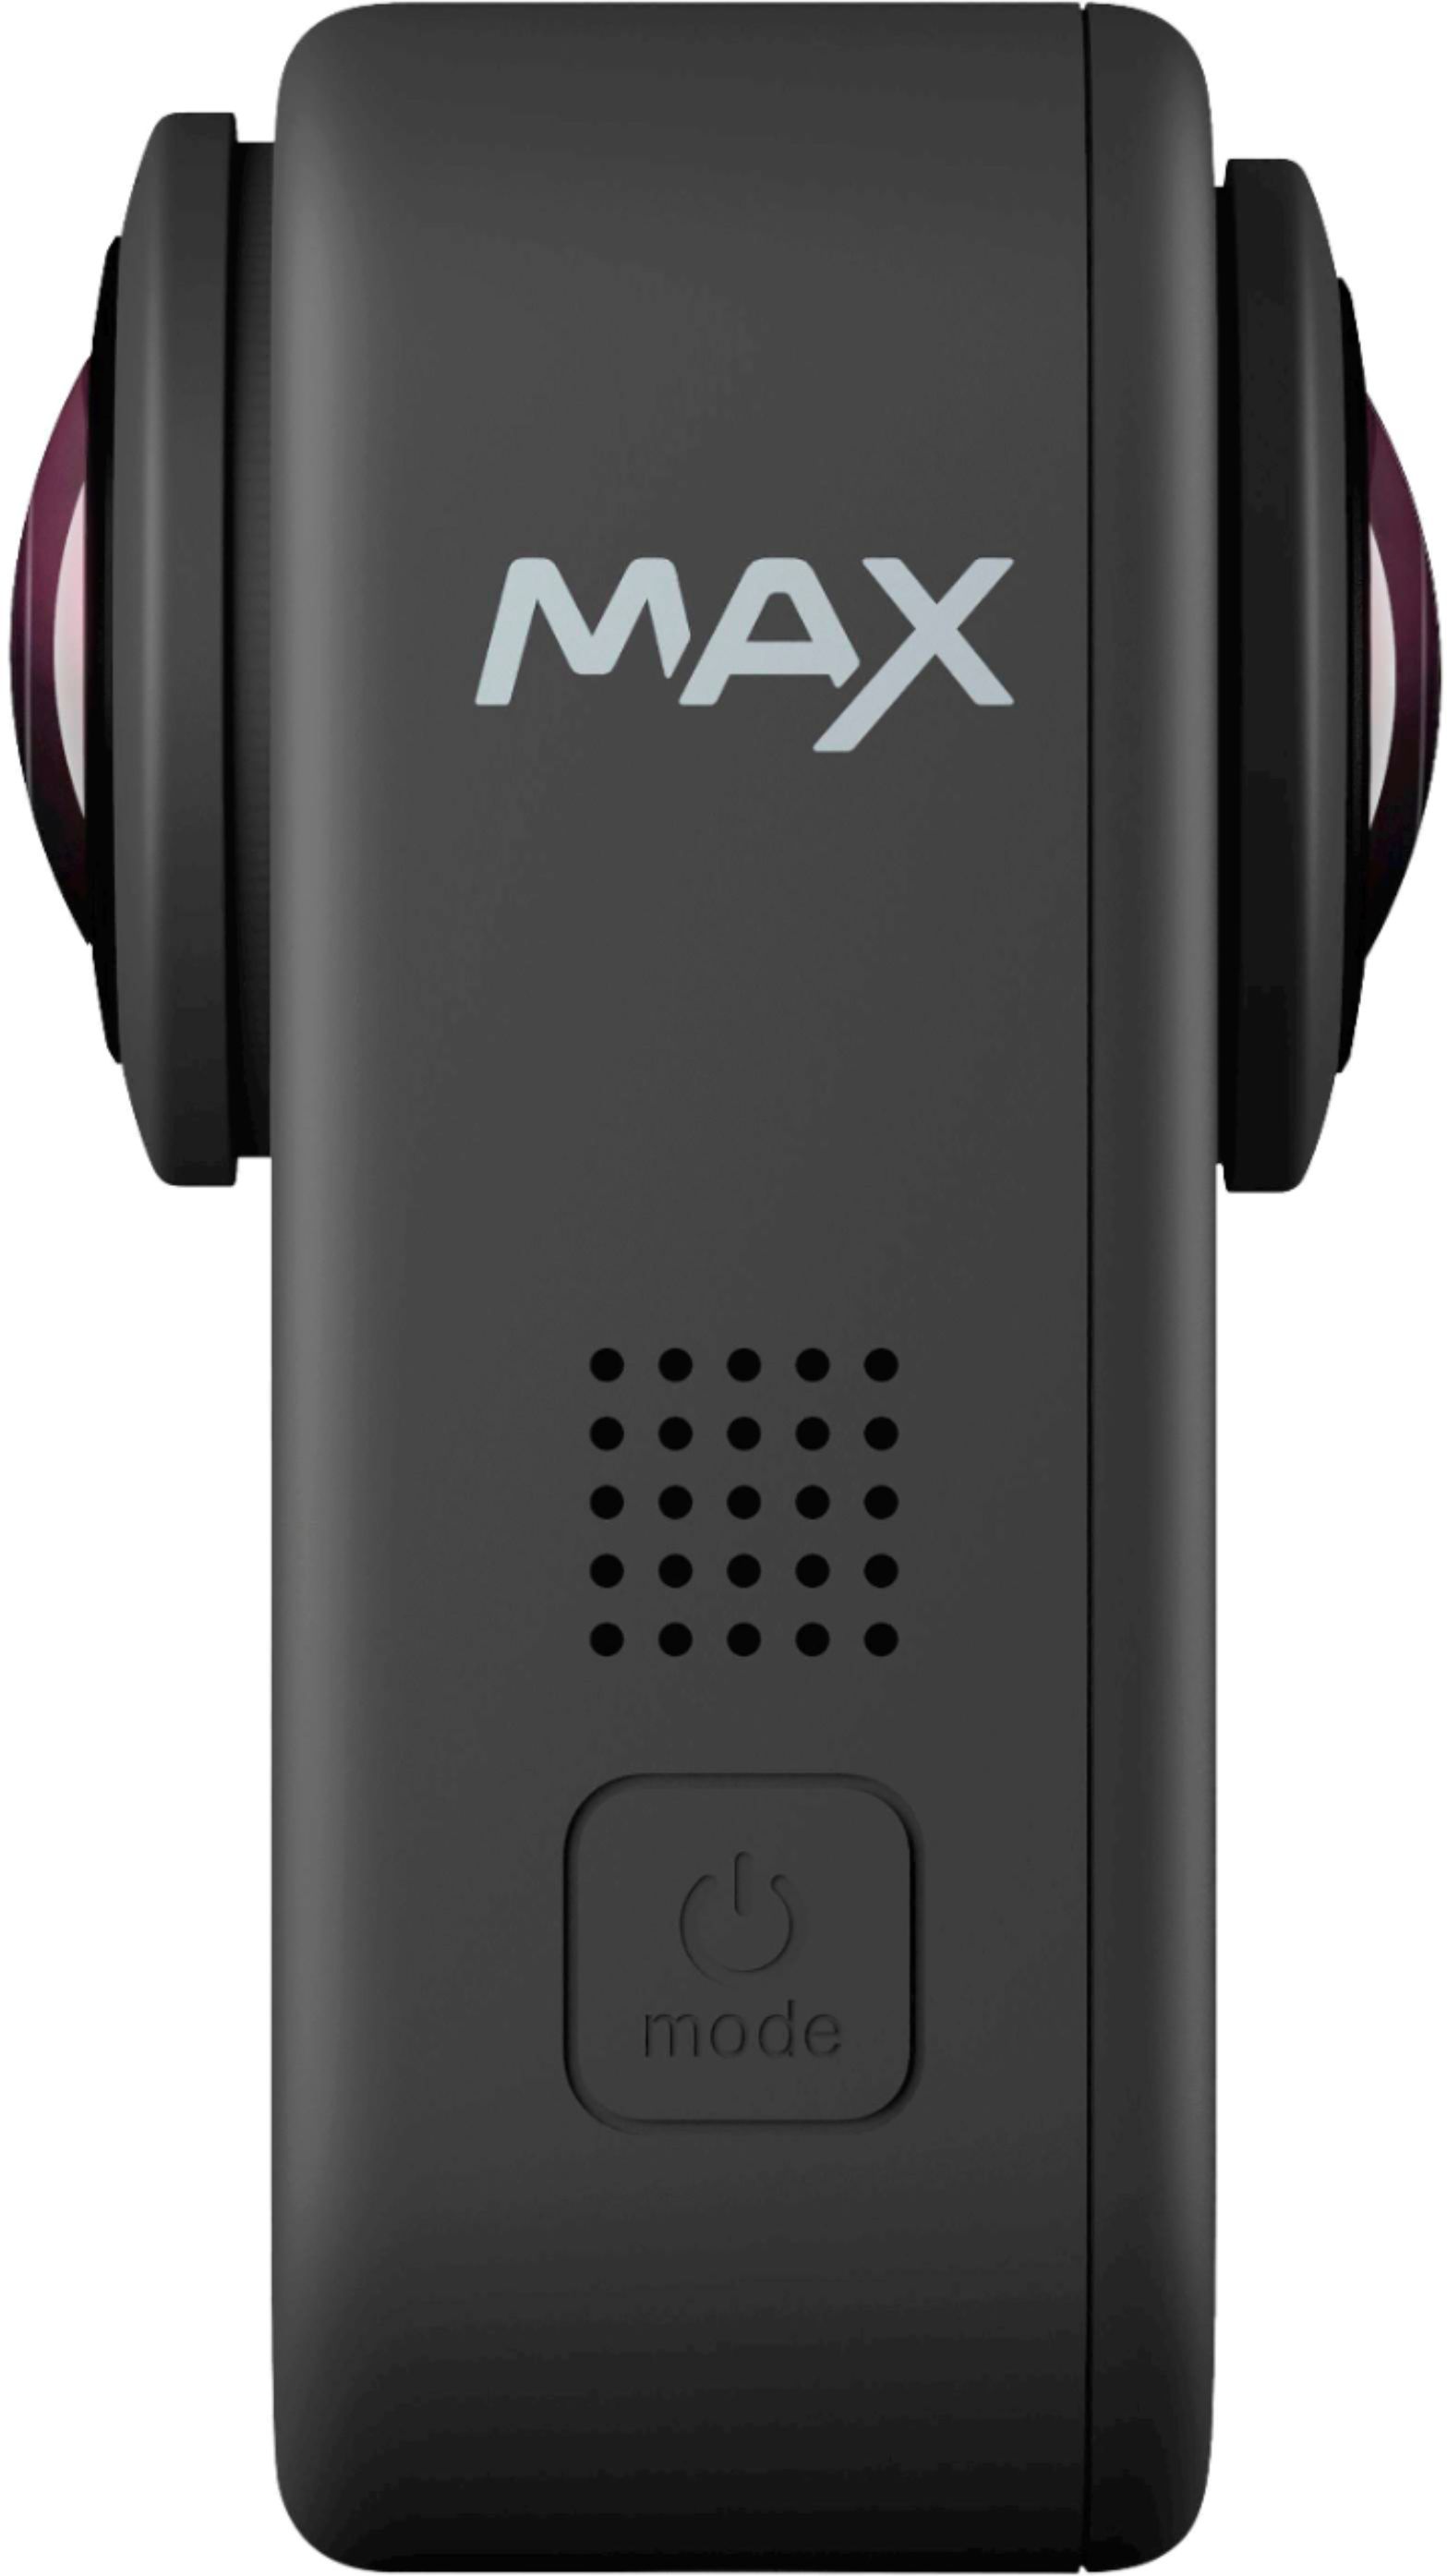 カメラ ビデオカメラ GoPro MAX Black SPCC1 - Best Buy